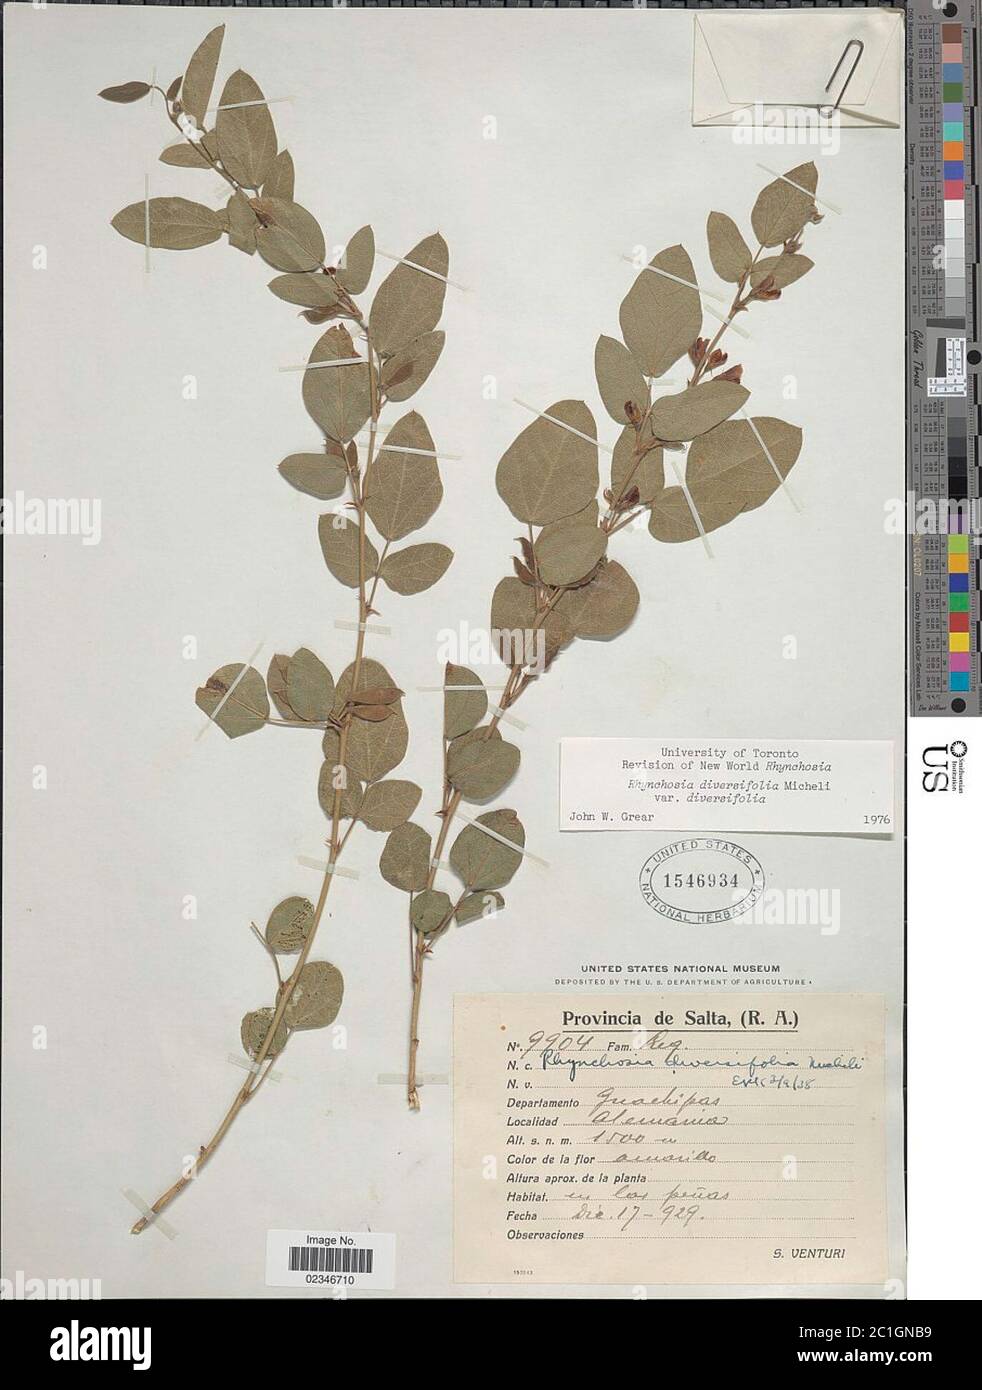 Rhynchosia diversifolia Micheli Rhynchosia diversifolia Micheli. Stock Photo